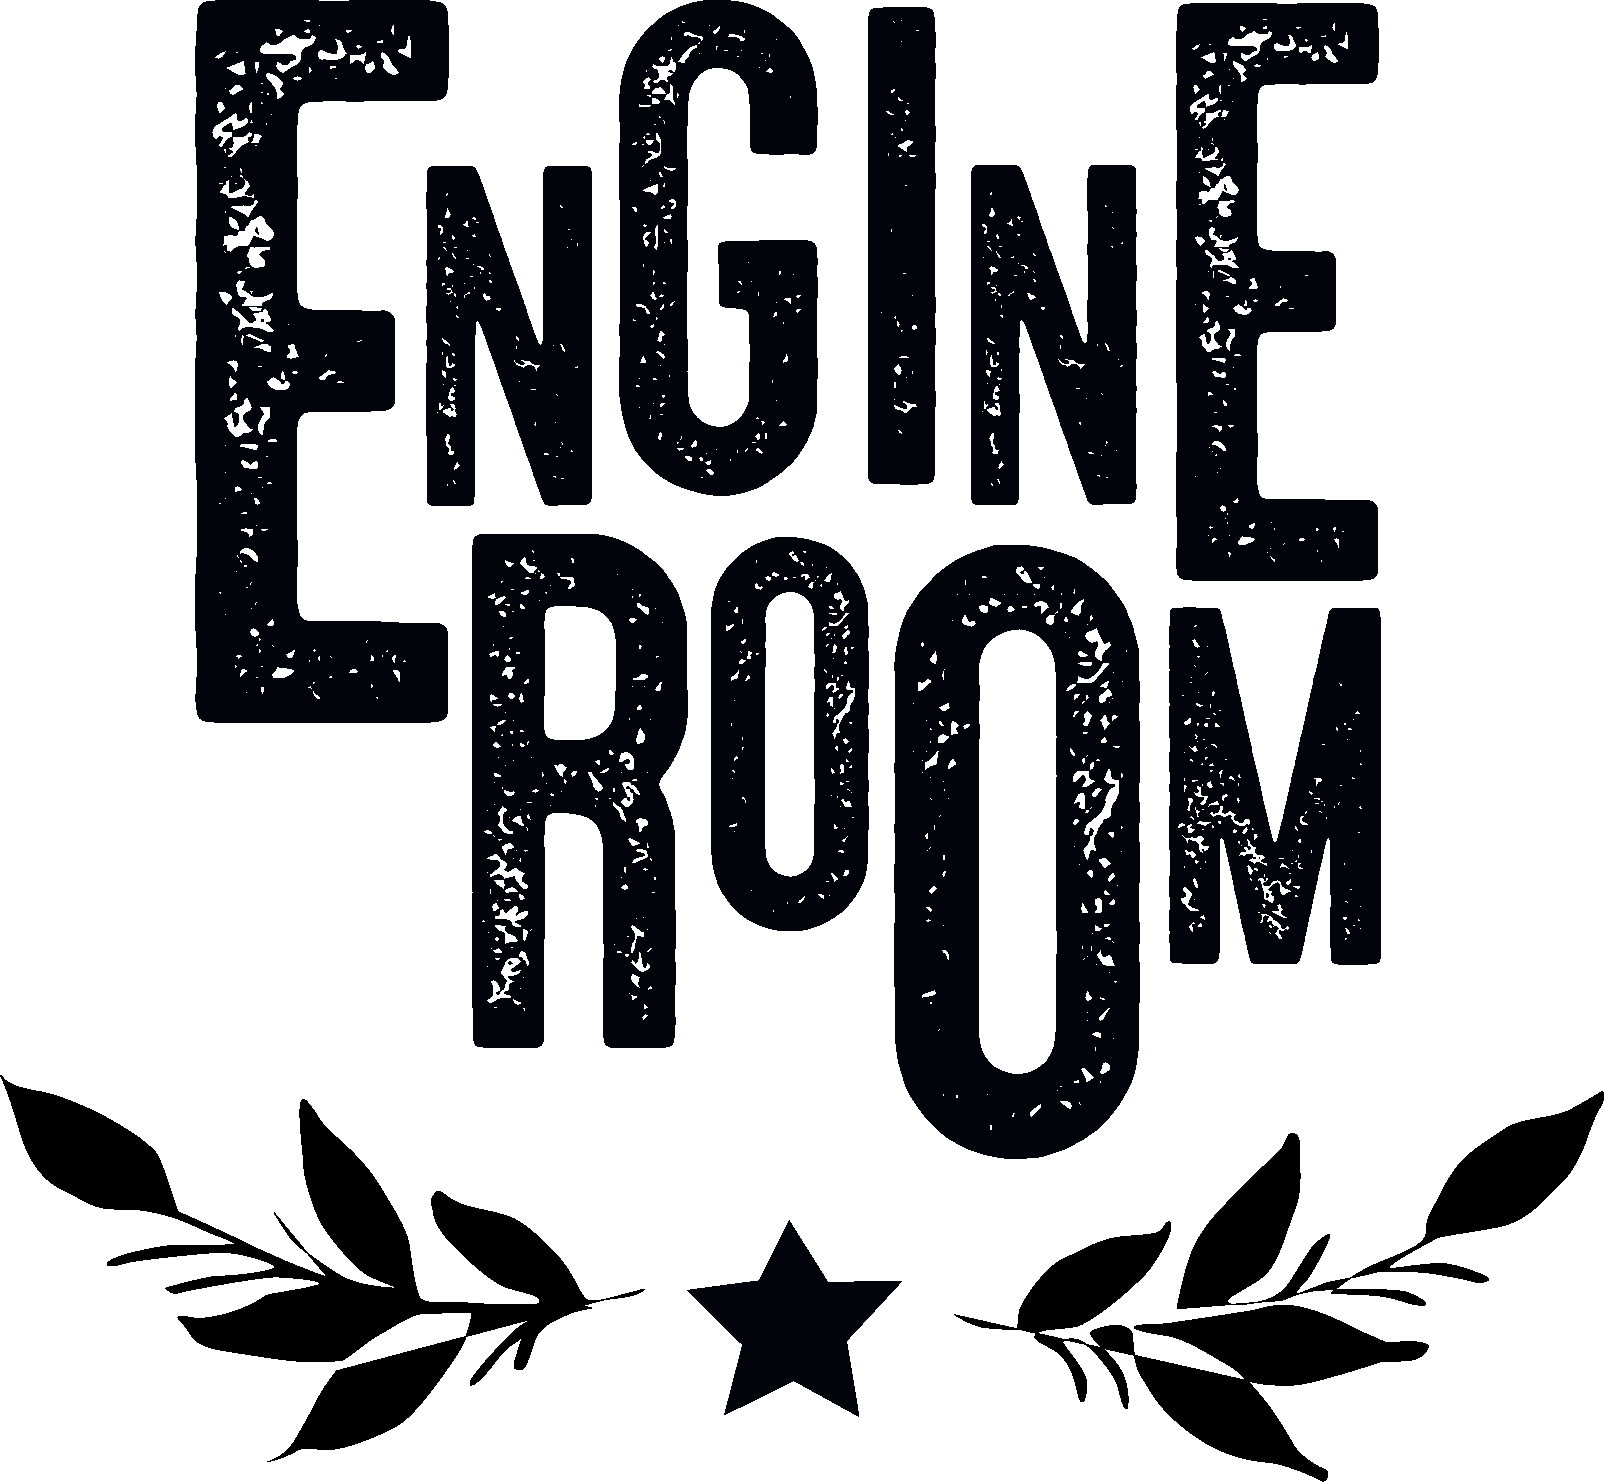 Engine Room_black.png